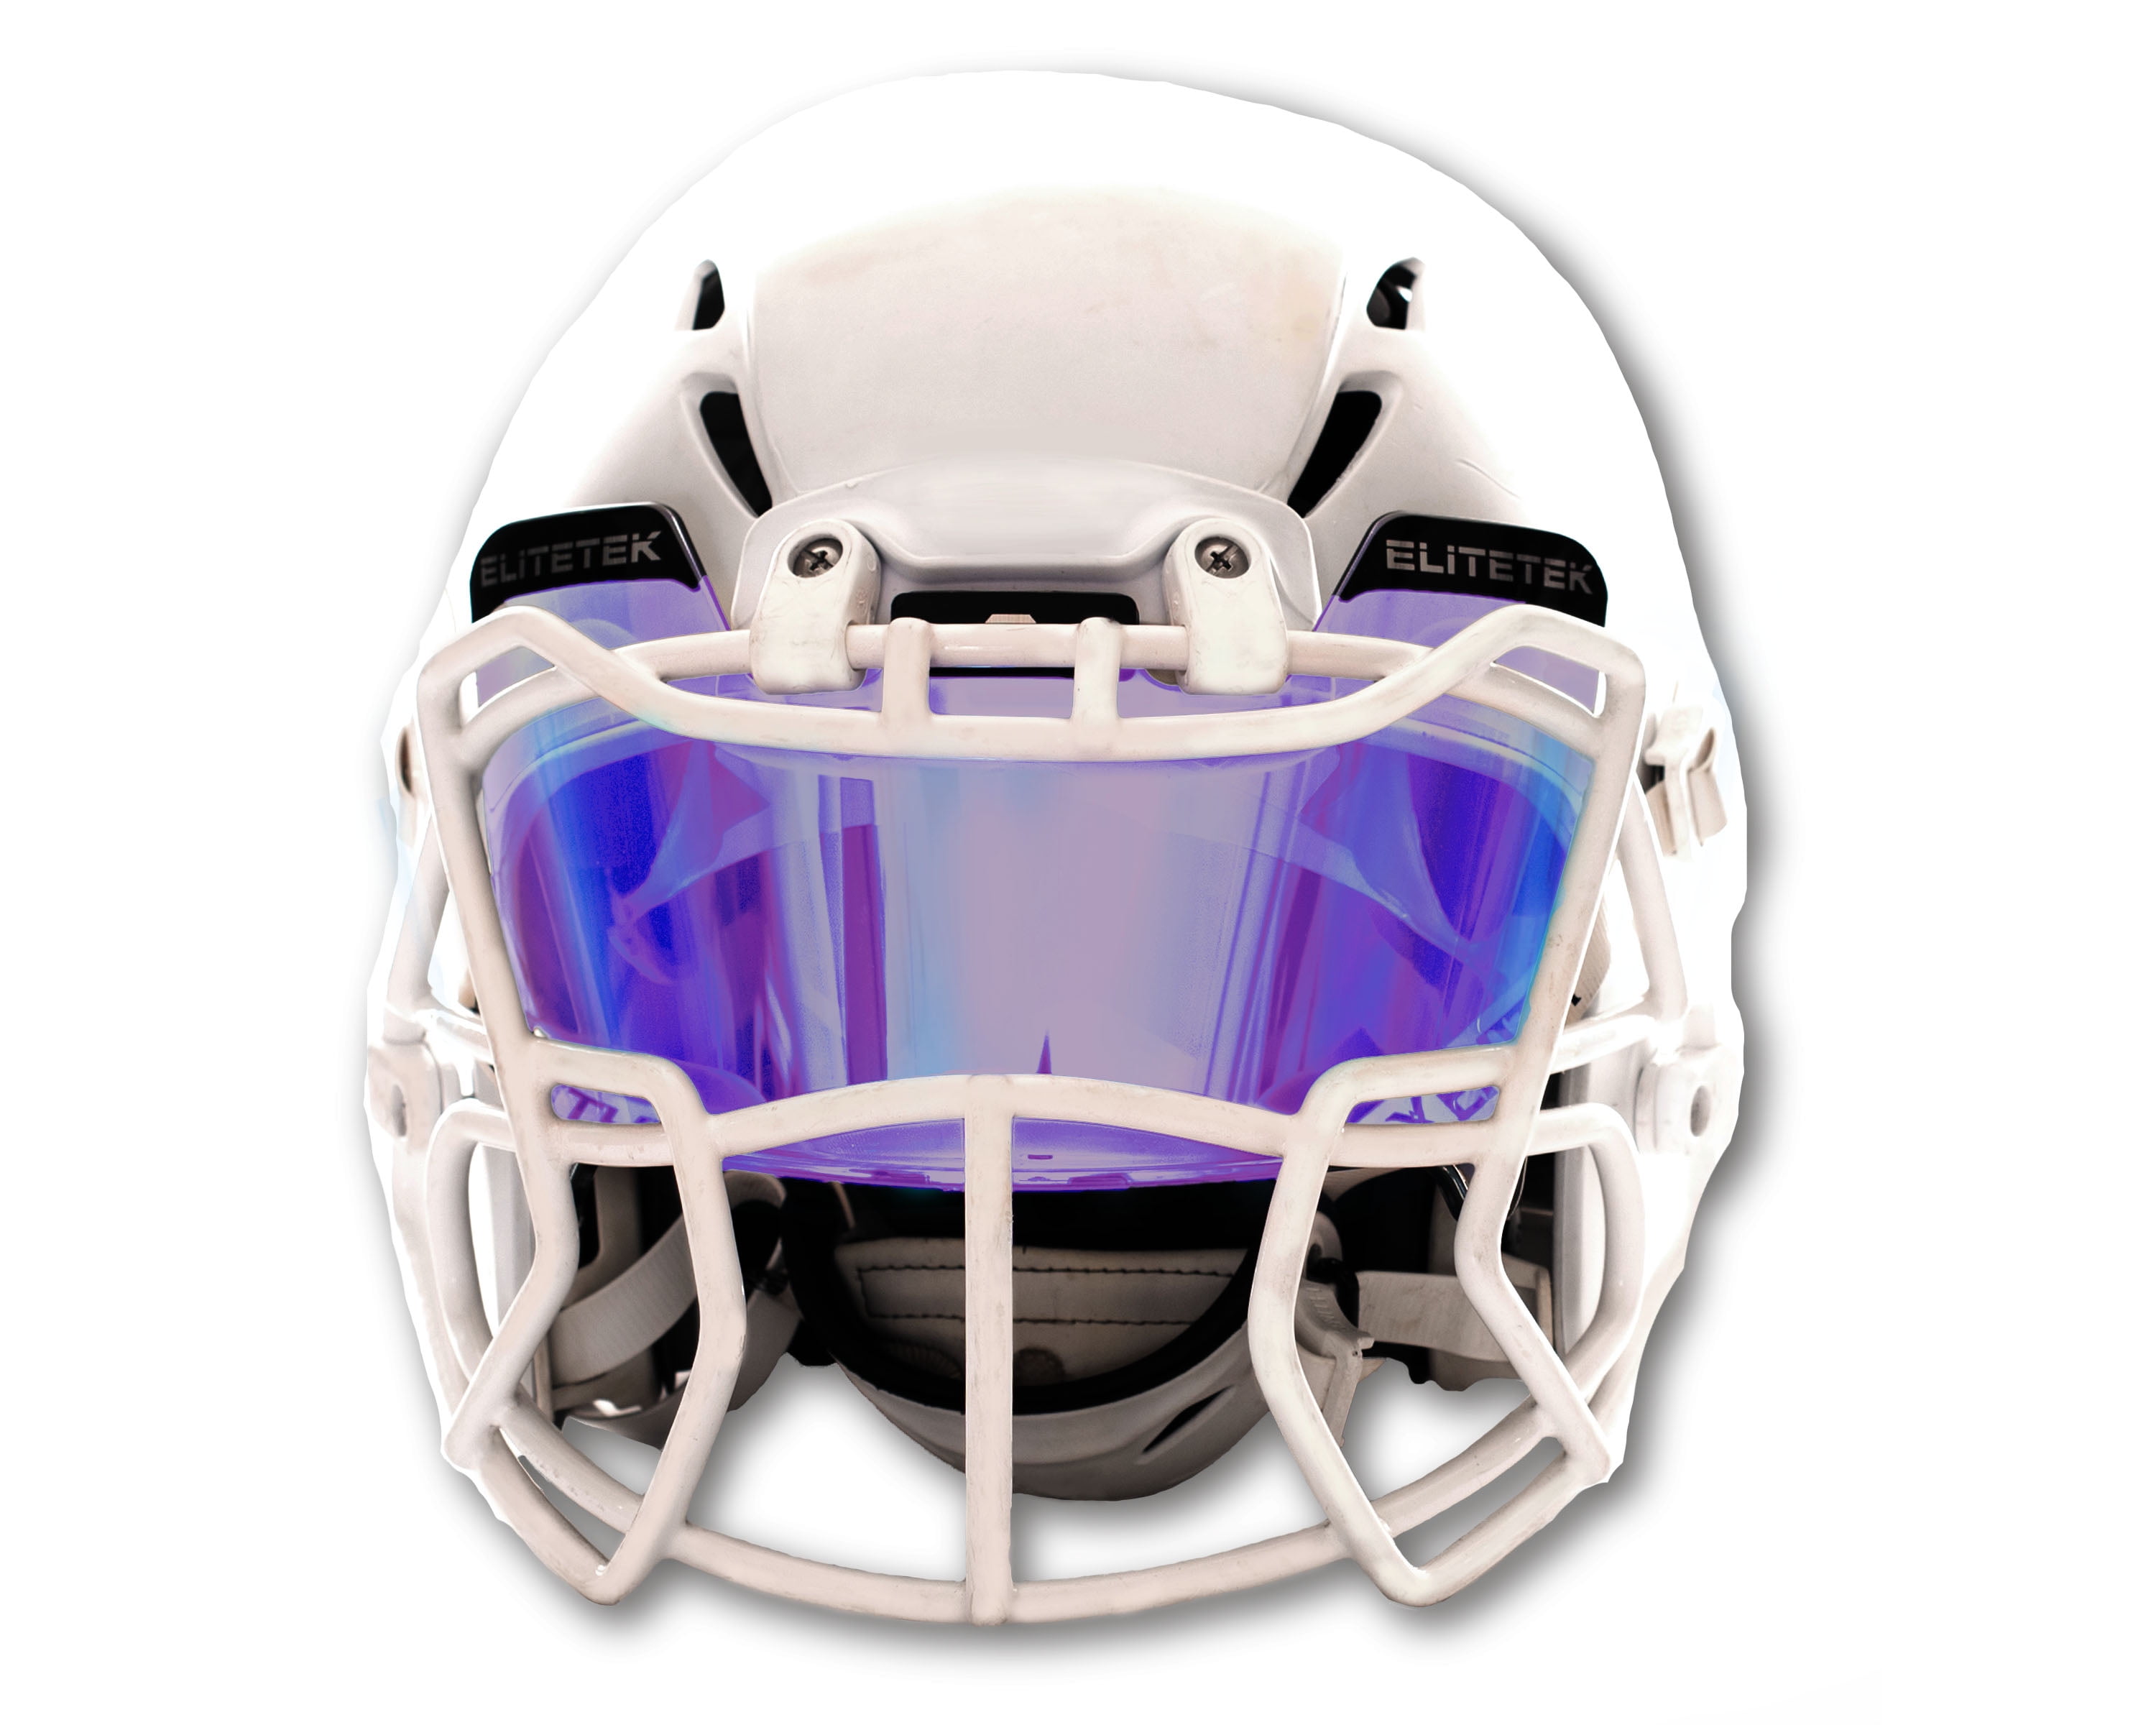 DISPLAY ONLY Solid Black Football Helmet Visor Eye Shield Full size 